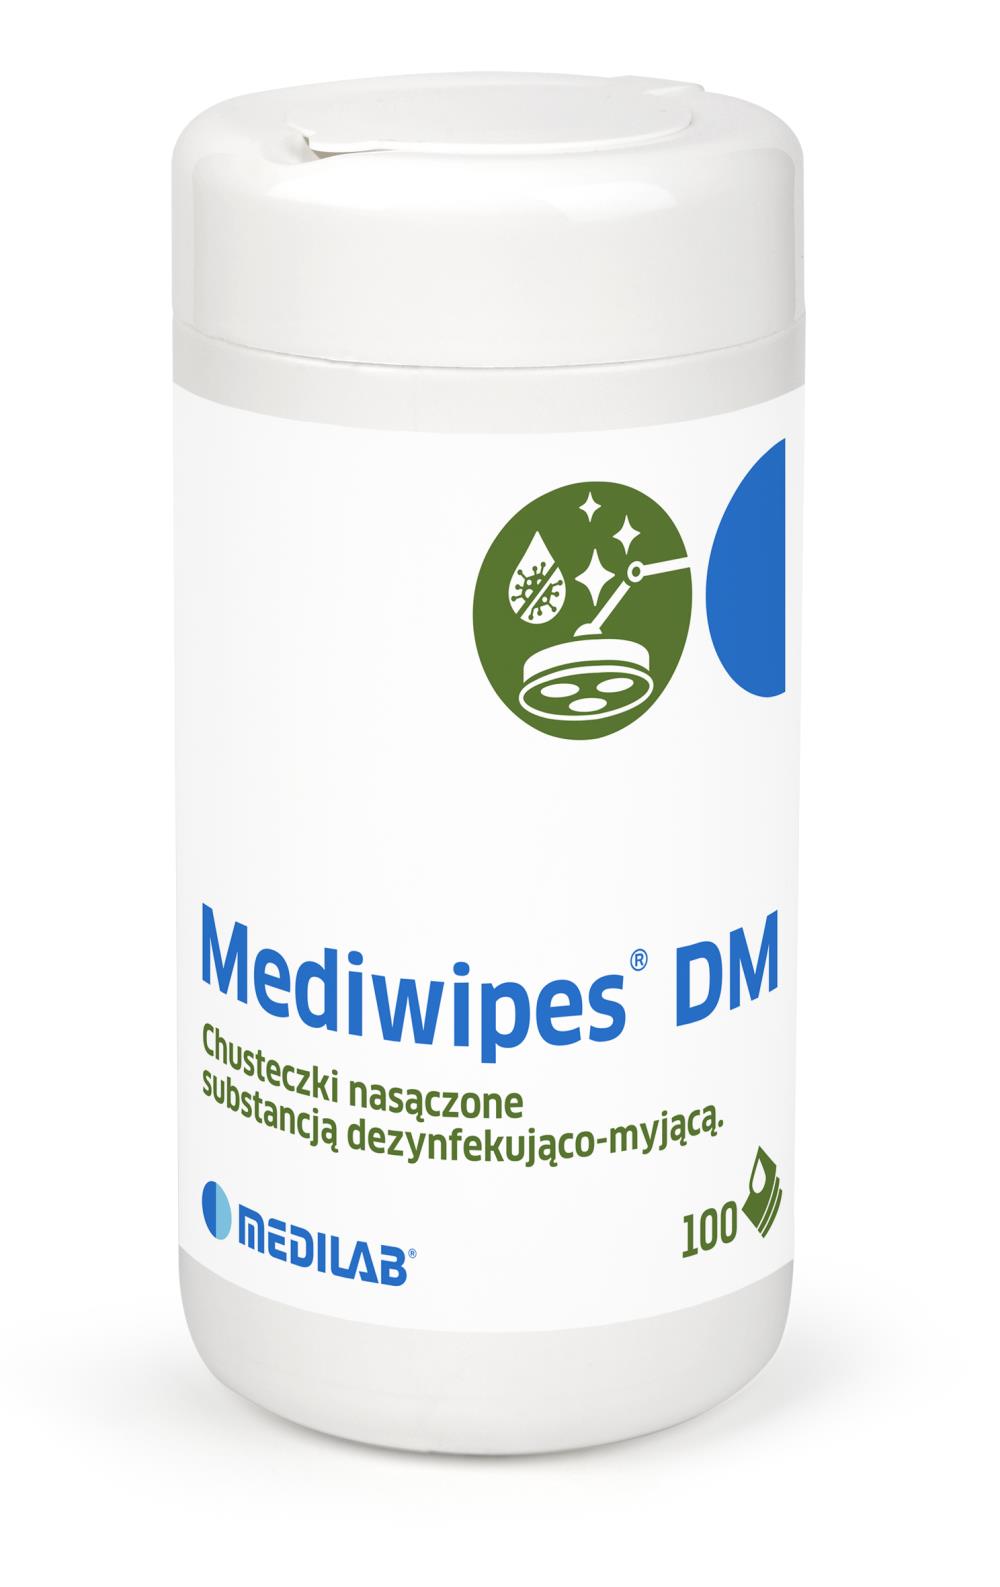 Chusteczki w tubie Mediwipes DM, dezynfekcja i mycie, 100 szt.